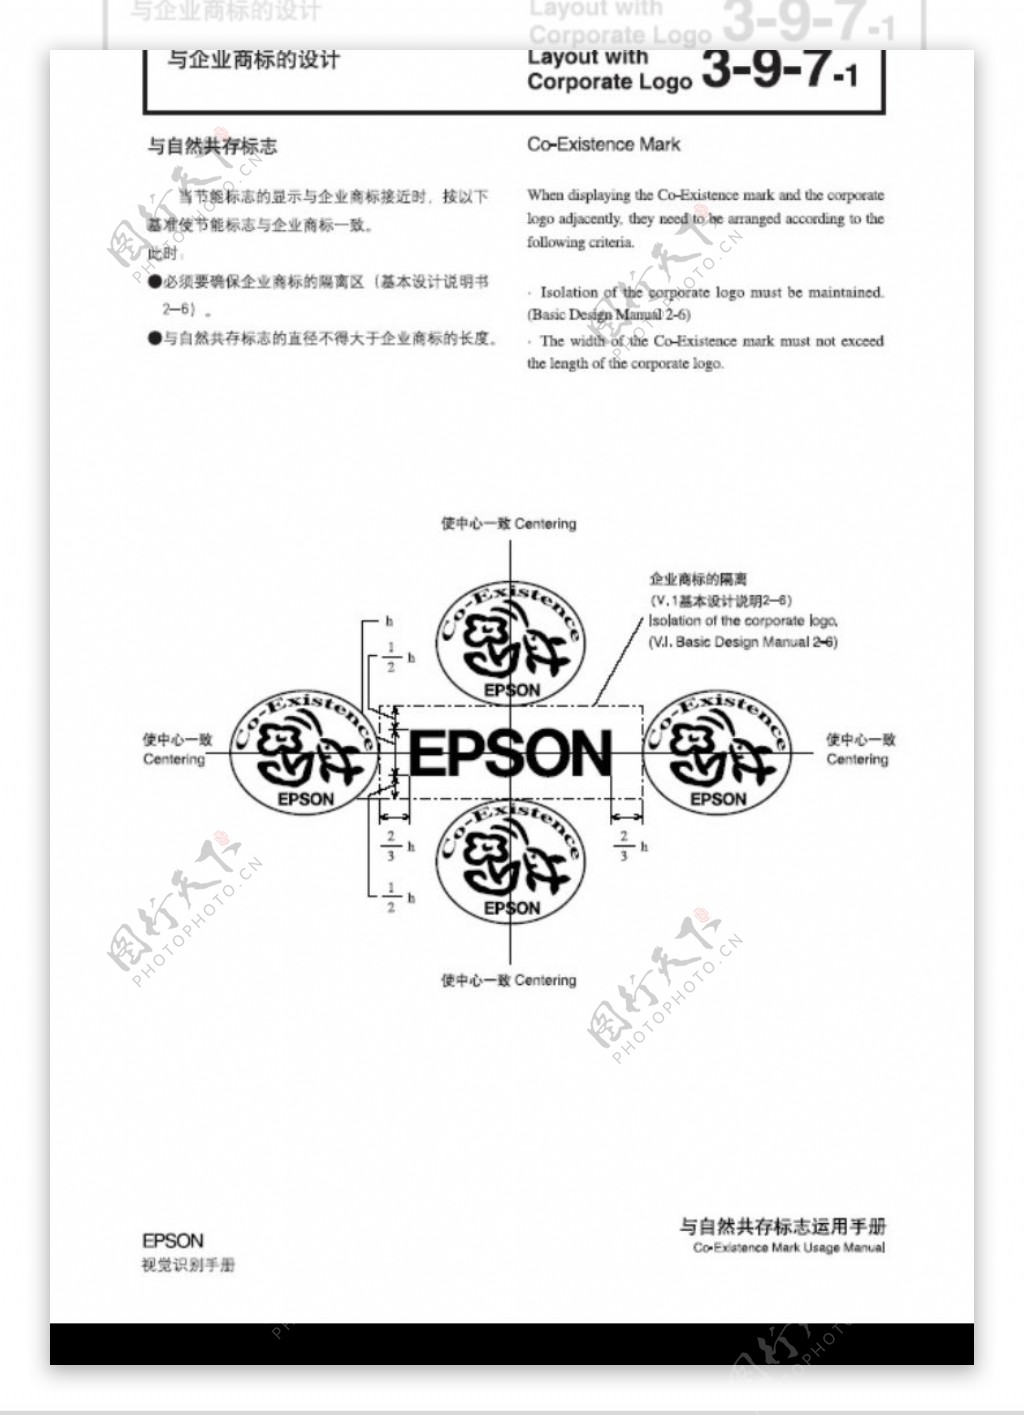 EPSON0052